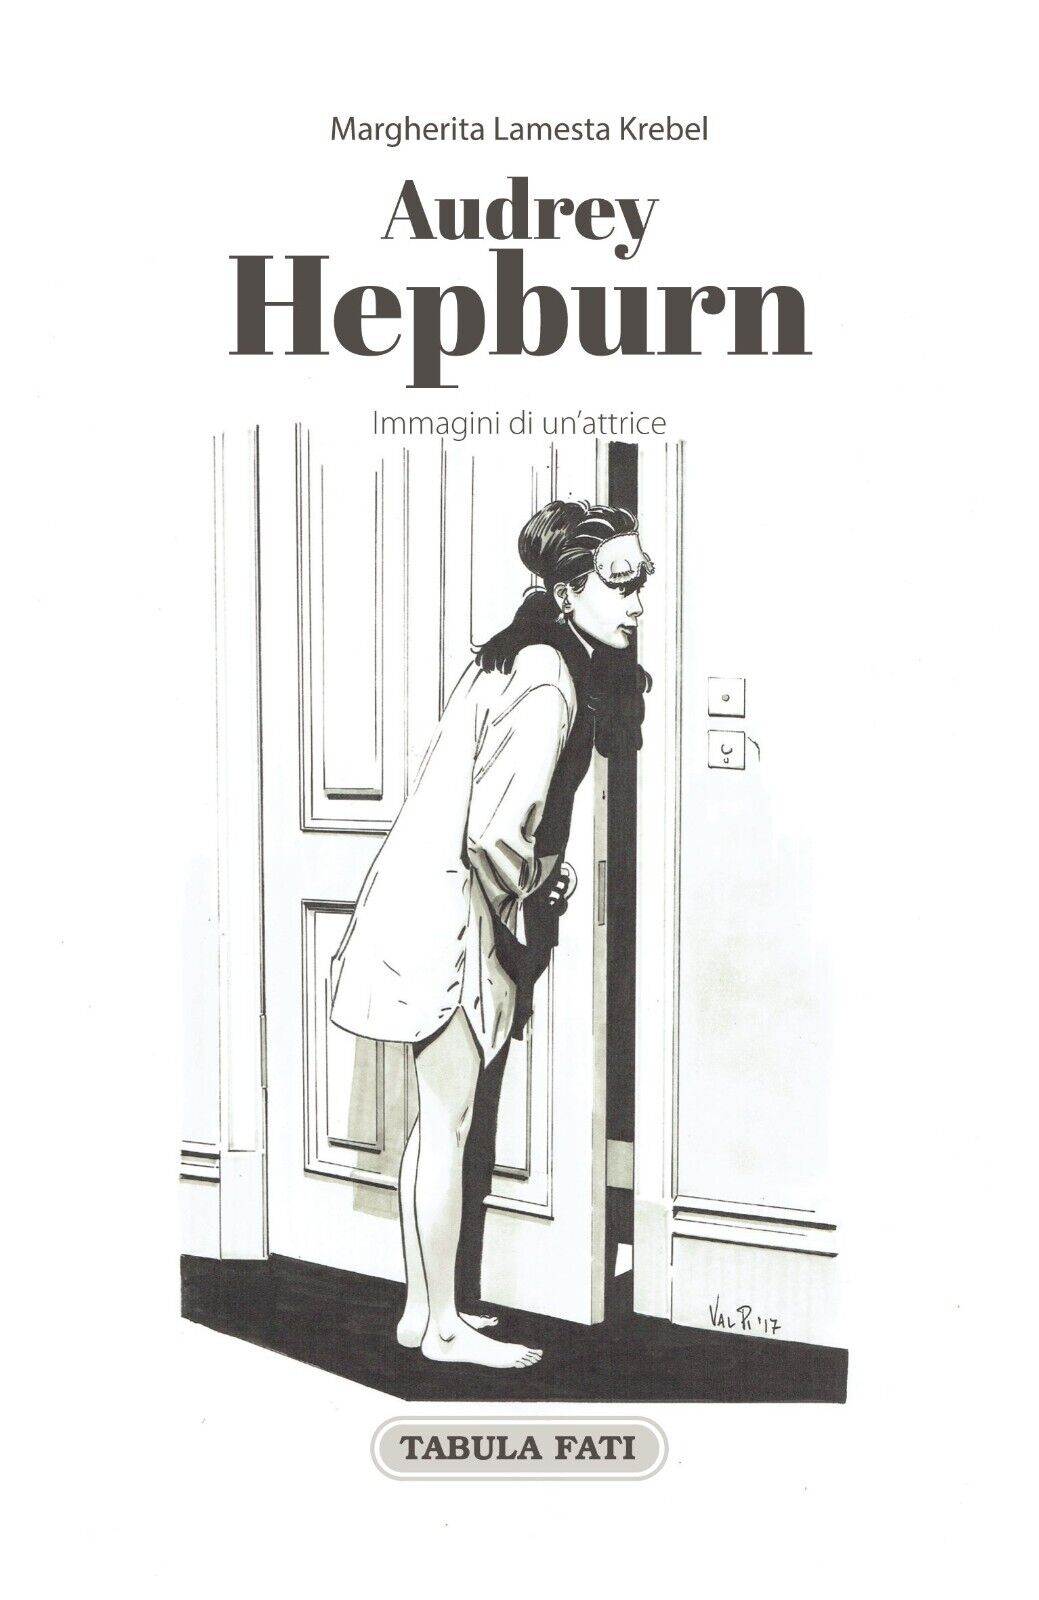 Audrey Hepburn. Immagini di un?attrice di Margherita Lamesta Krebel, 2017, Ta